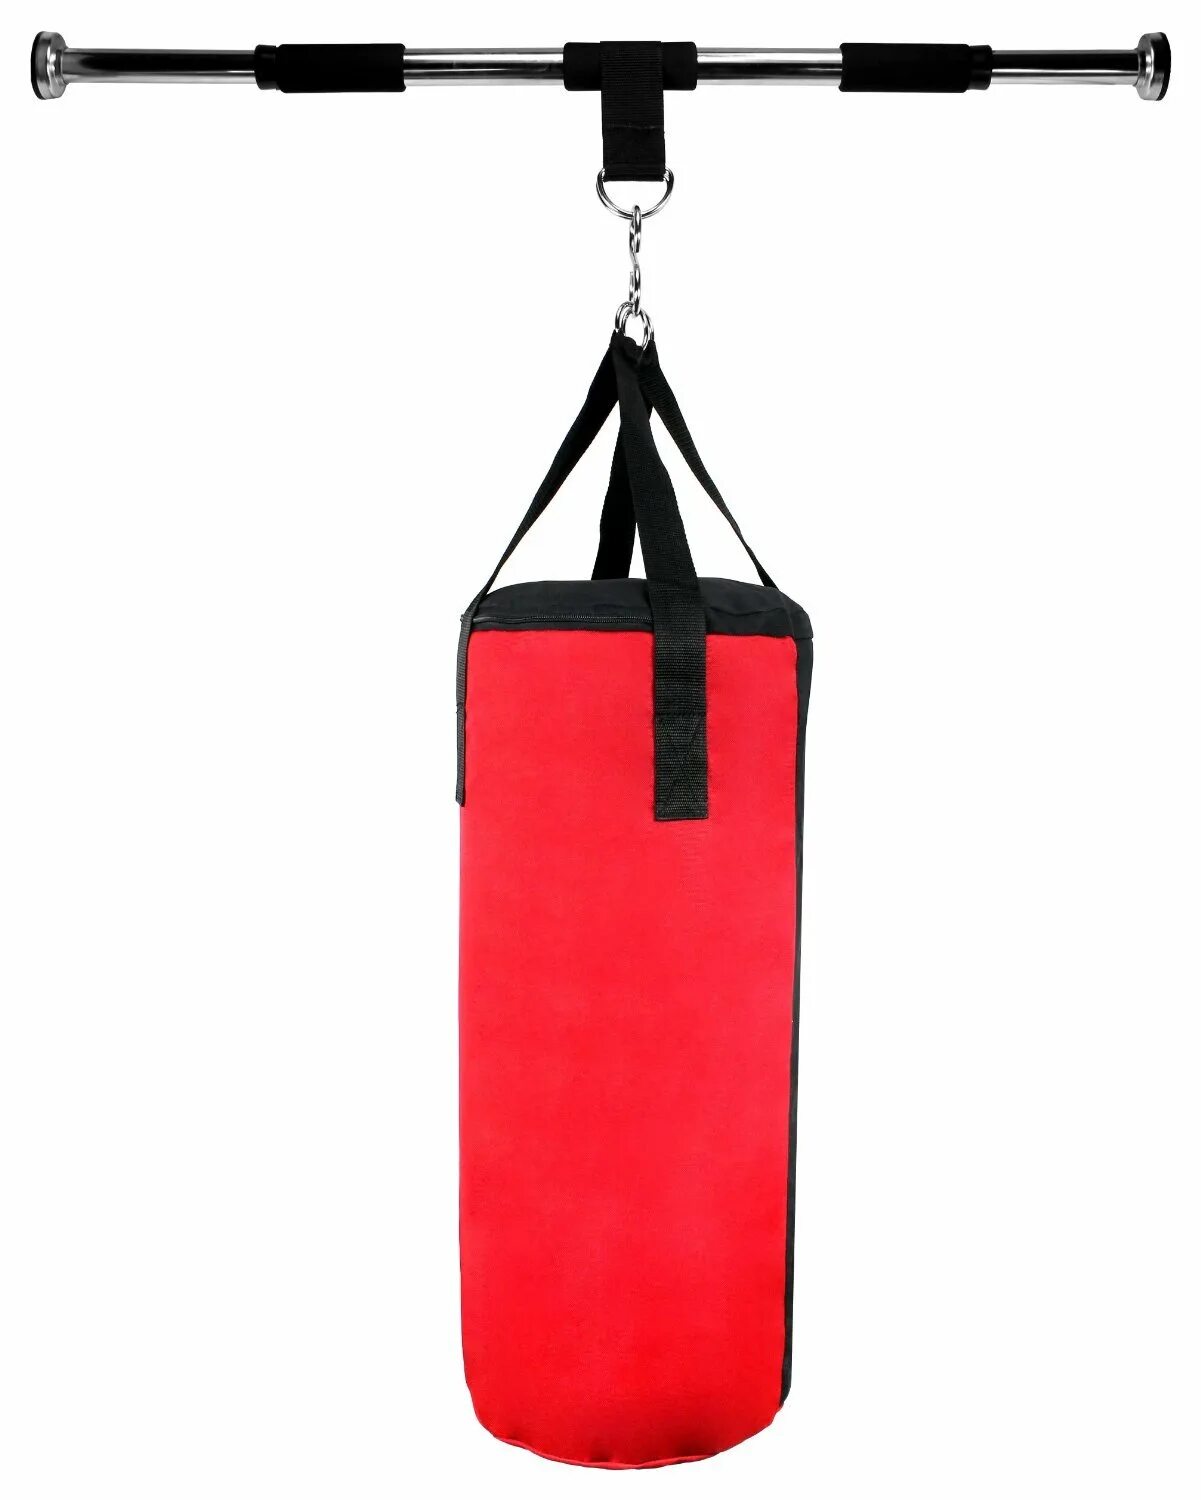 Тренажер боксера title Boxing doorway Bag. Груша боксерская подвесная. Груша боксерская детская подвесная. Груша боксерская Каплевидная.